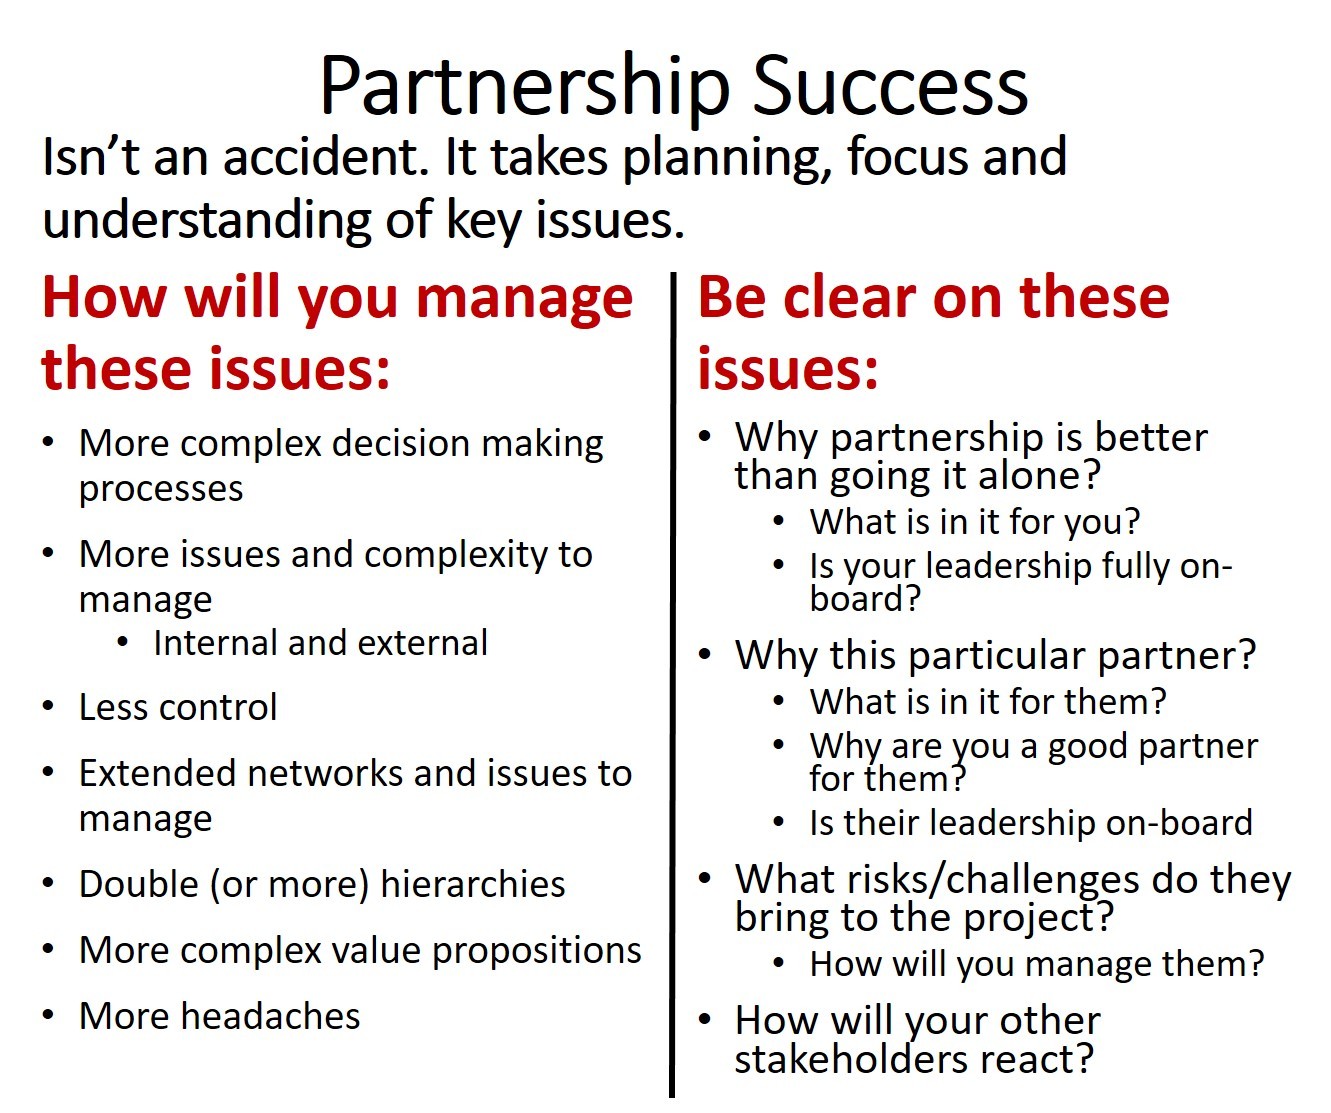 Partnership success